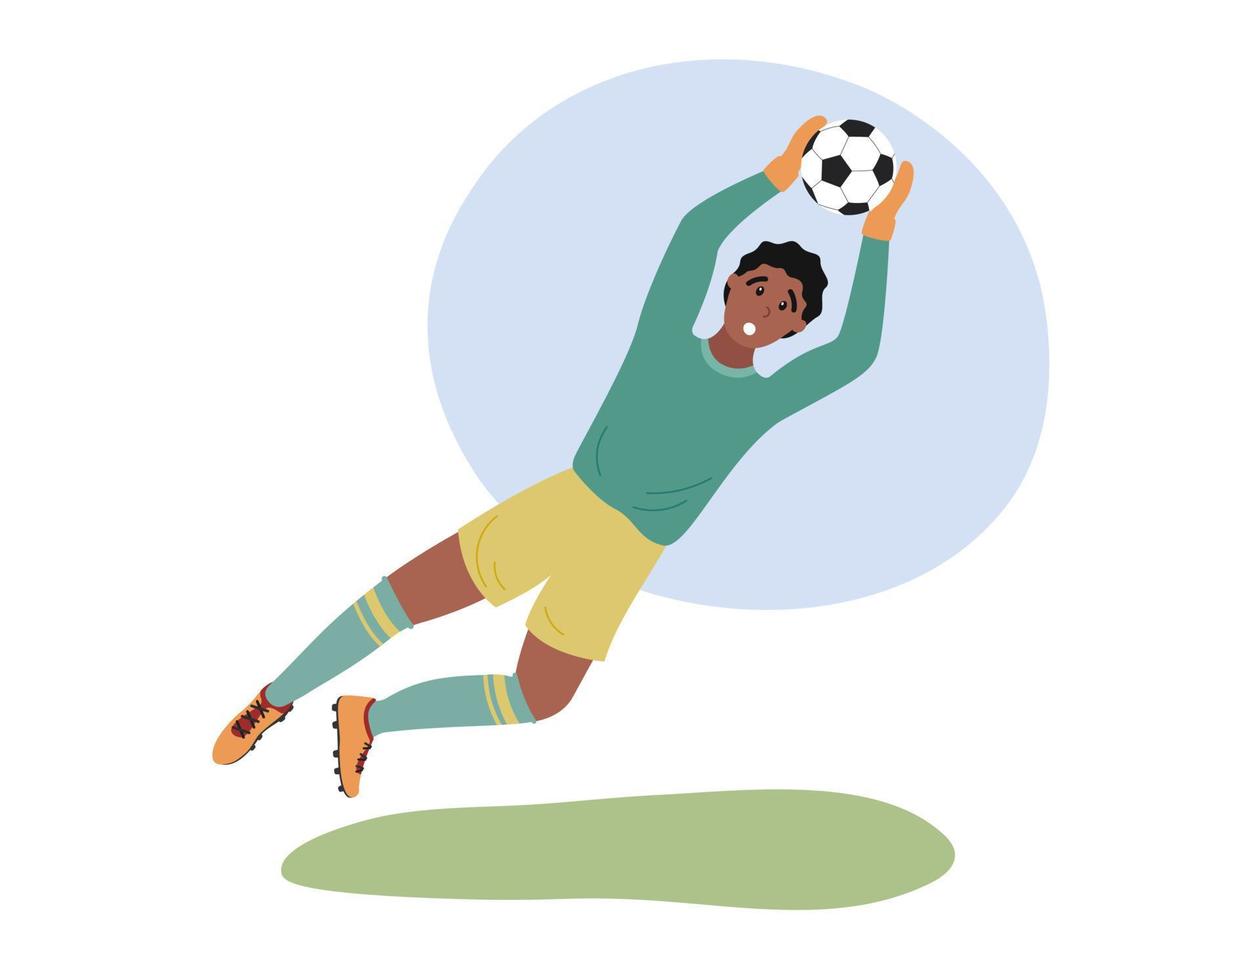 voetbal keeper geïsoleerd. voetbal keeper speler springen en bal vangen. platte vectorillustratie van man aan het voetballen vector